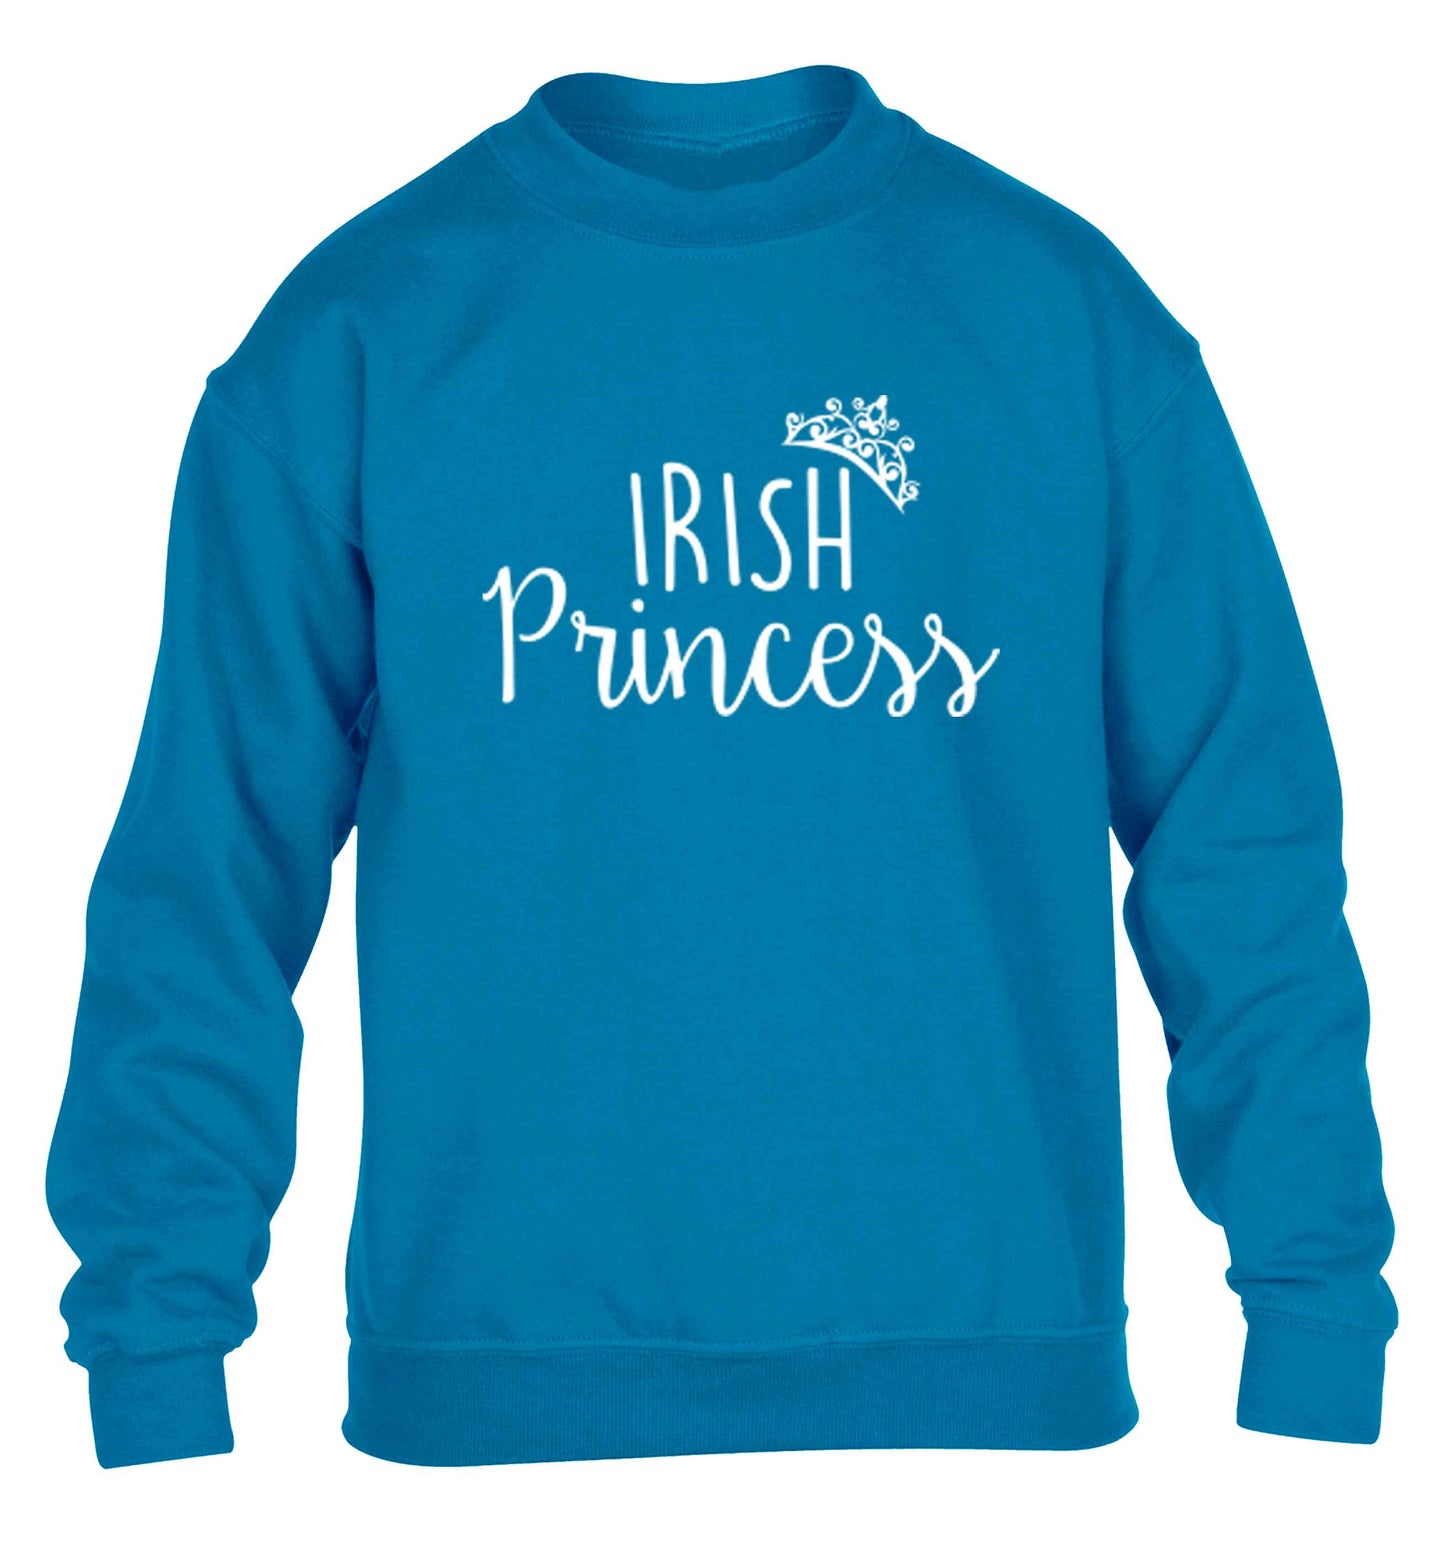 Irish princess children's blue sweater 12-13 Years